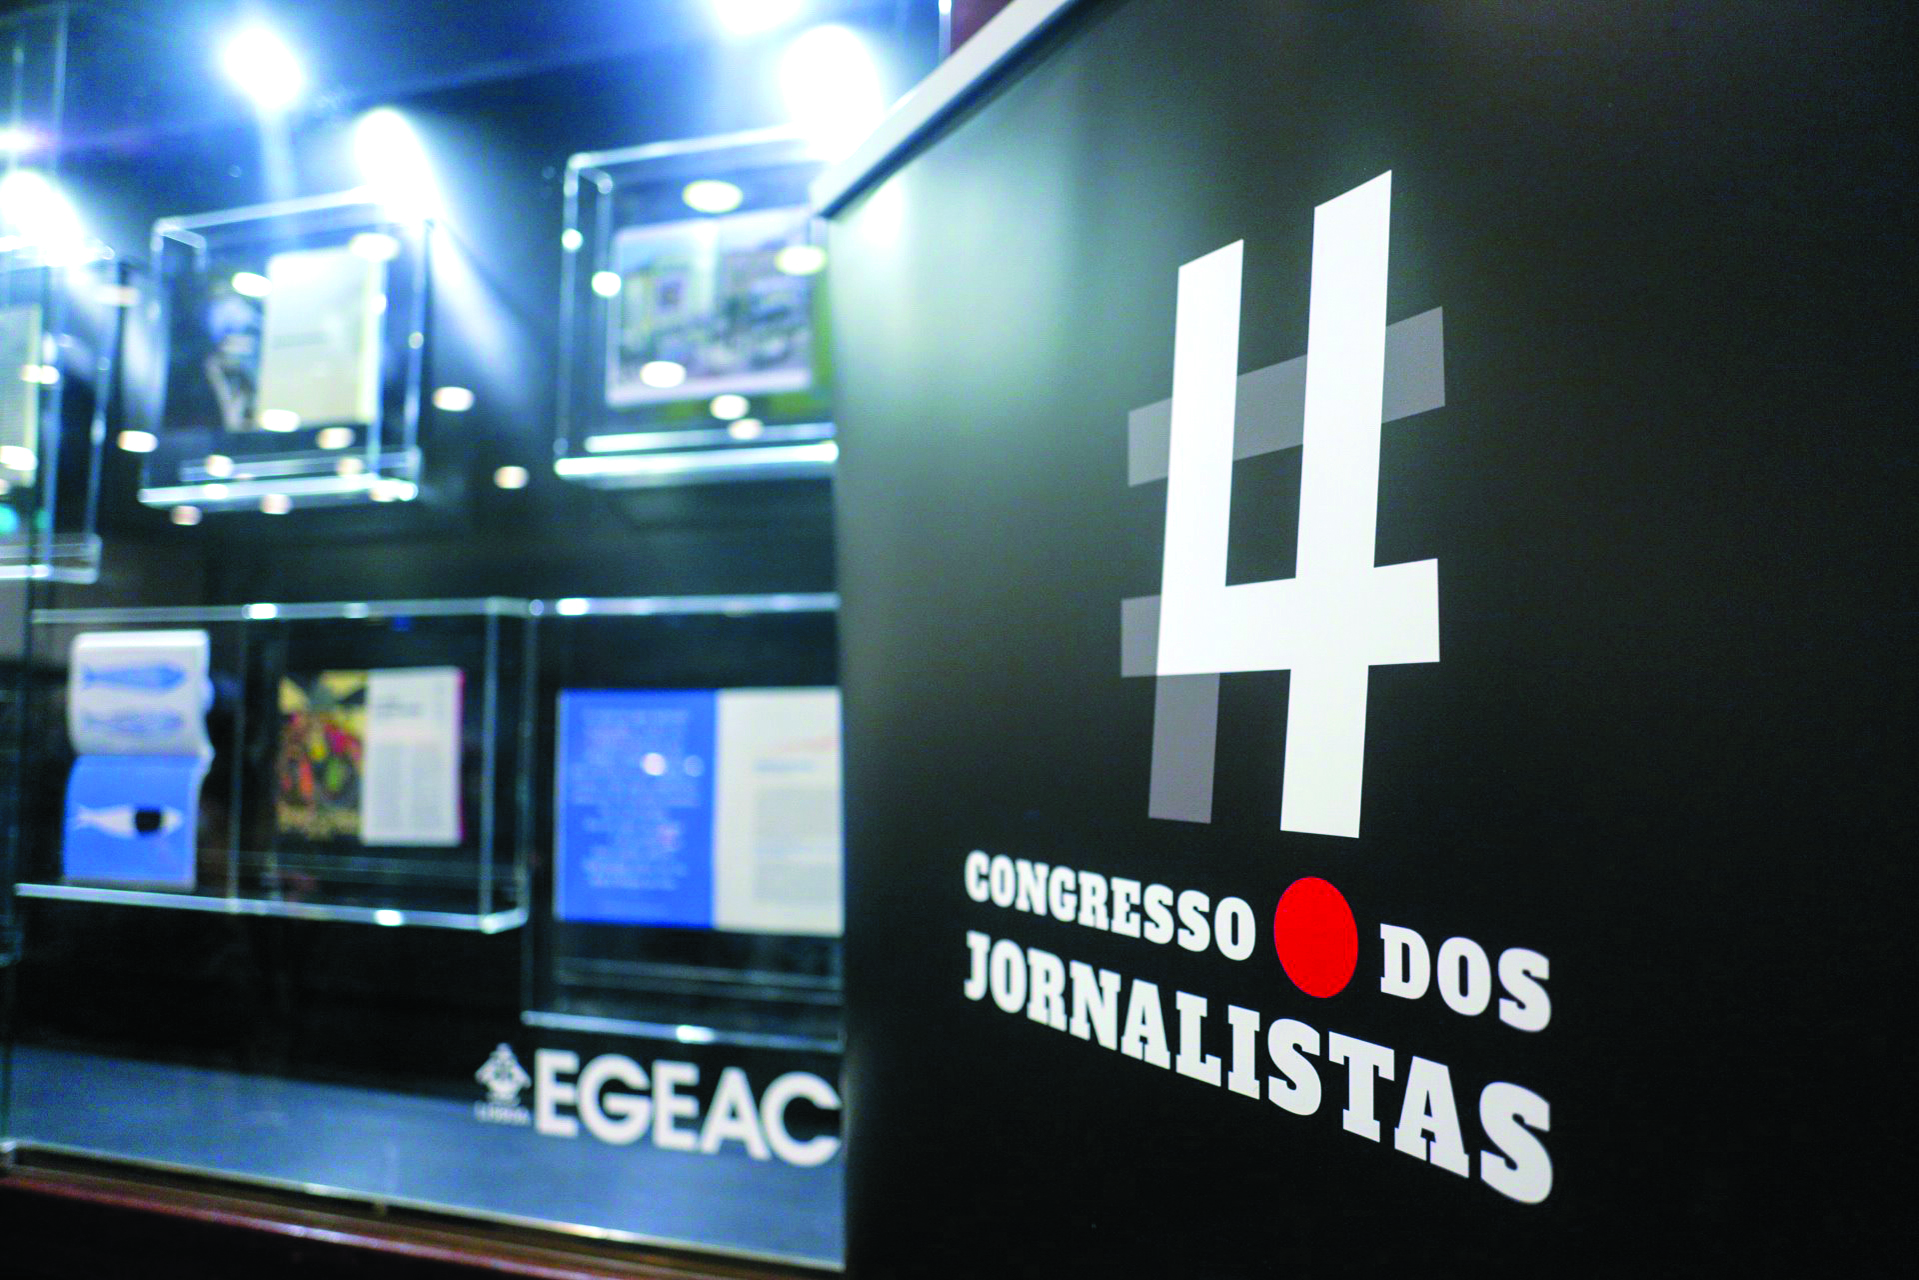 Jornalistas. “As condições  de trabalho estão a ter efeitos  na qualidade do jornalismo”